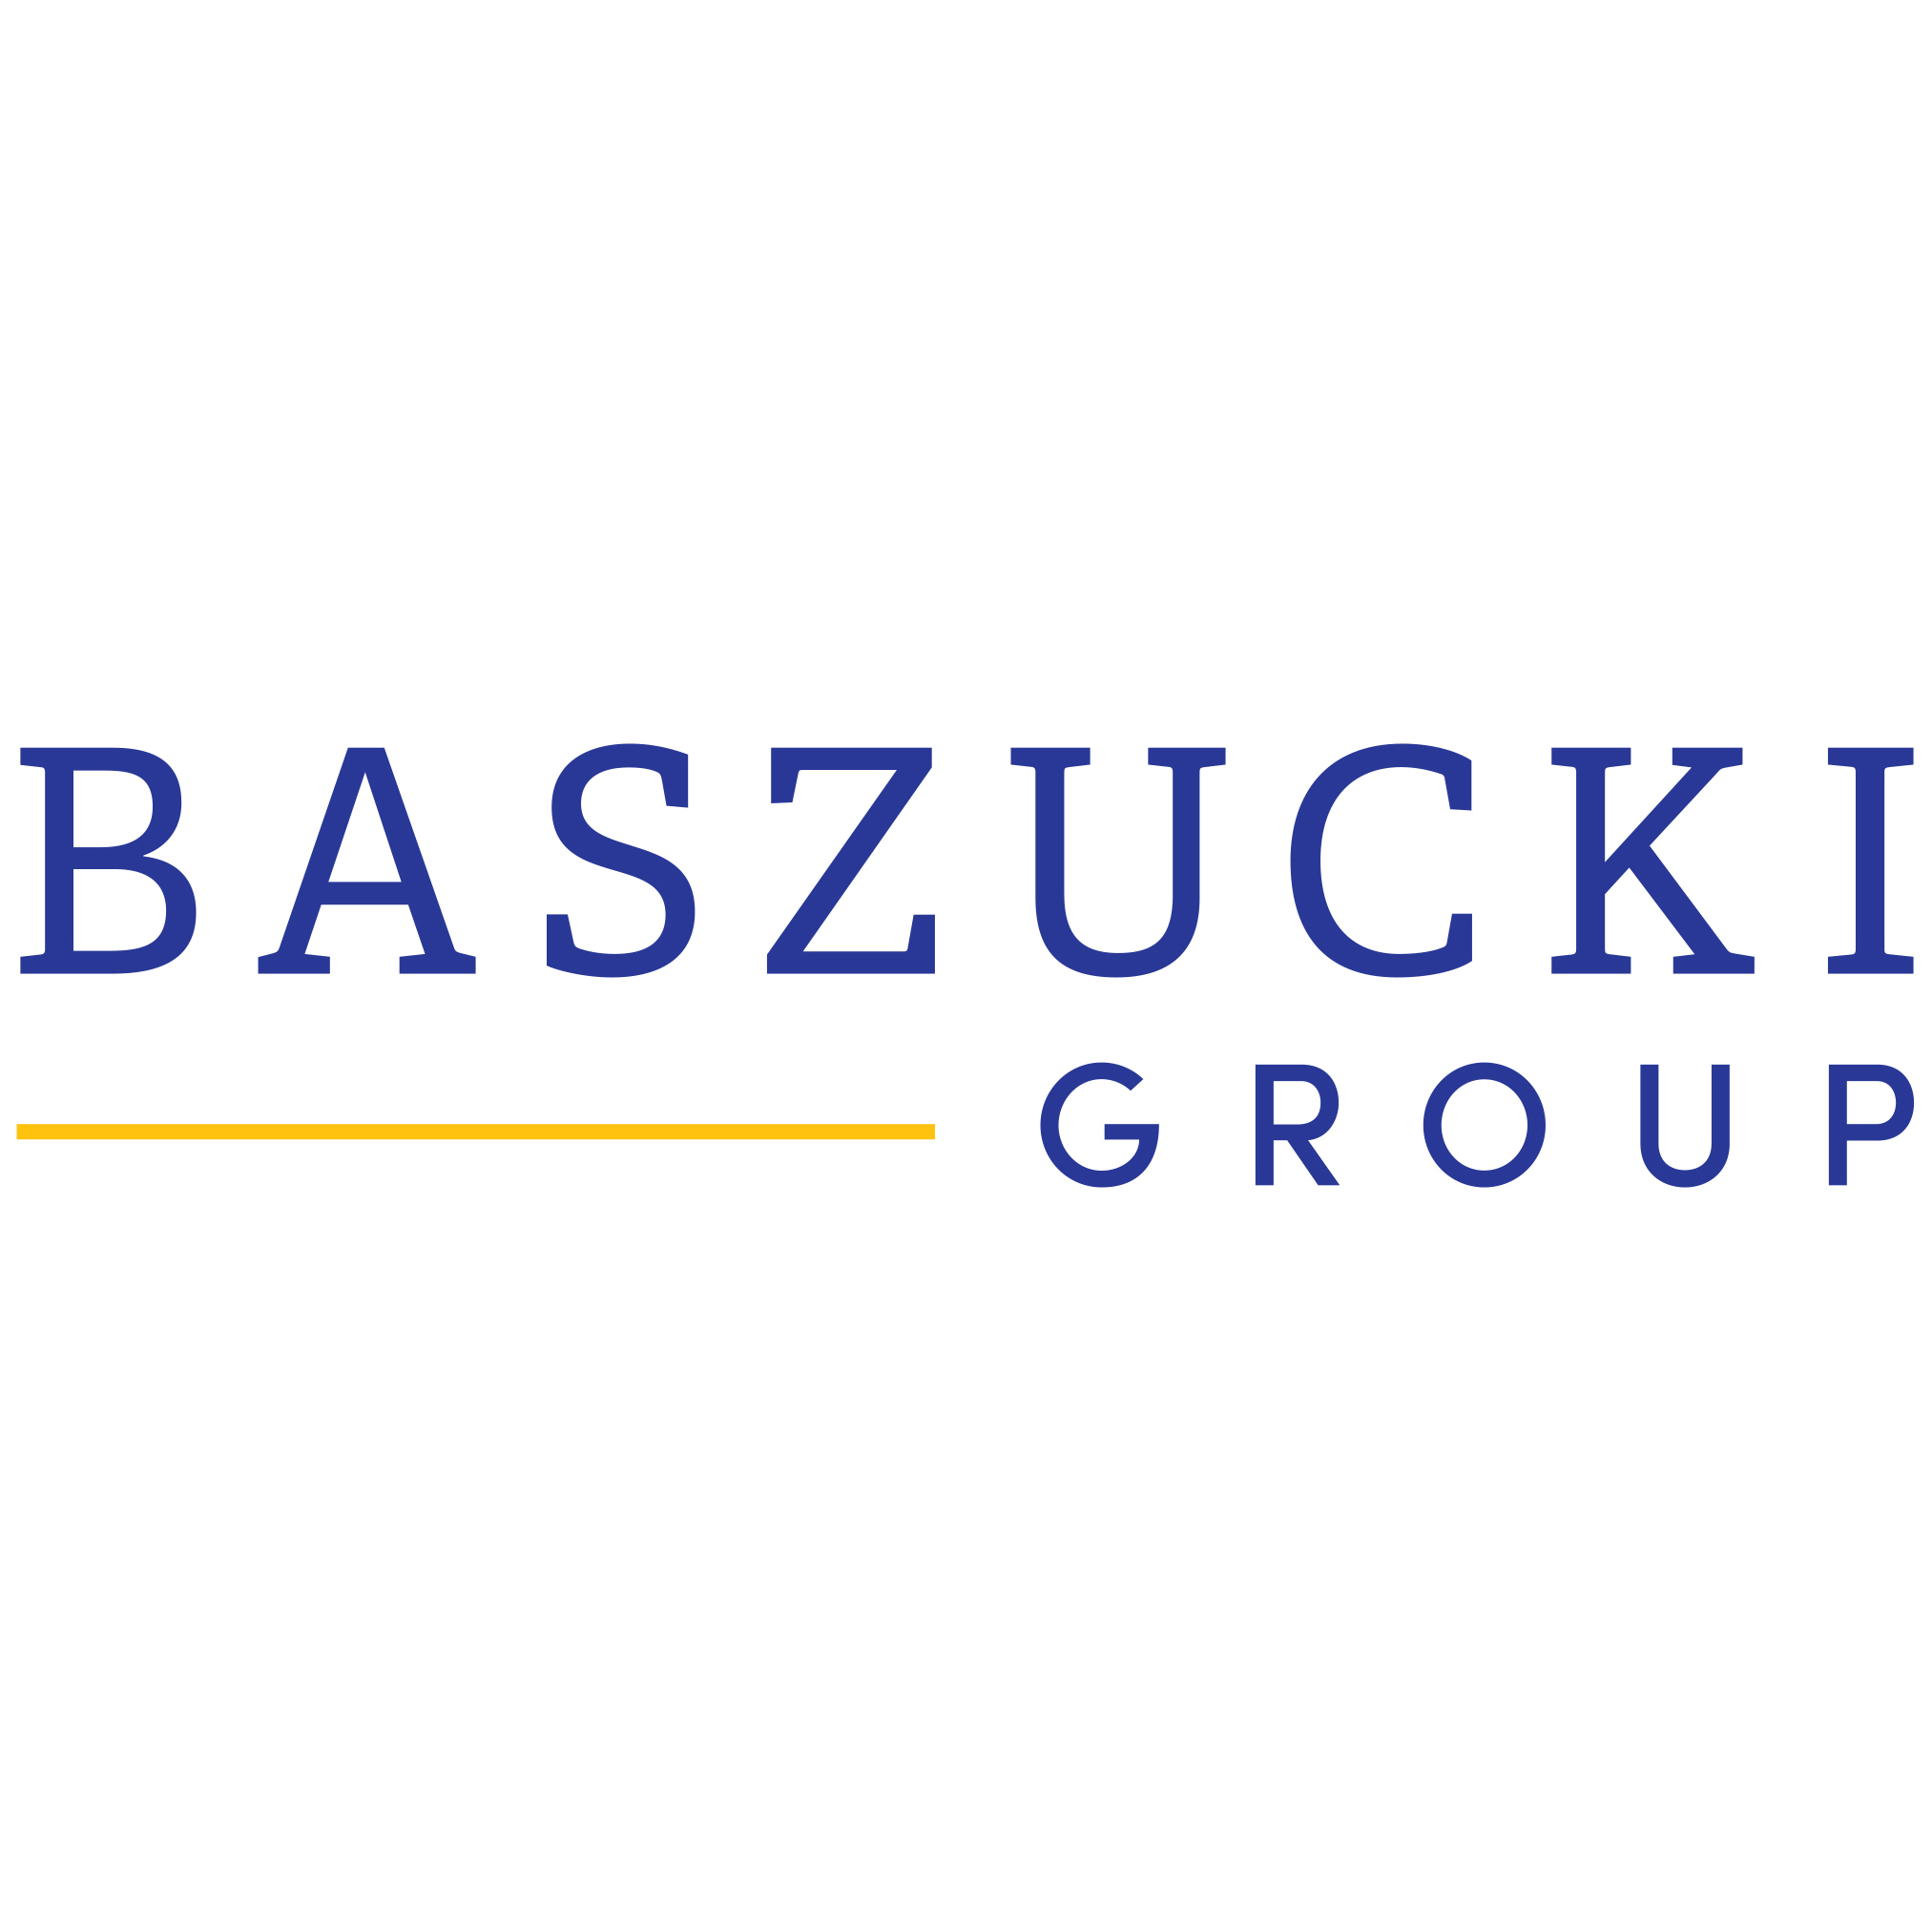 Baszucki Group logo